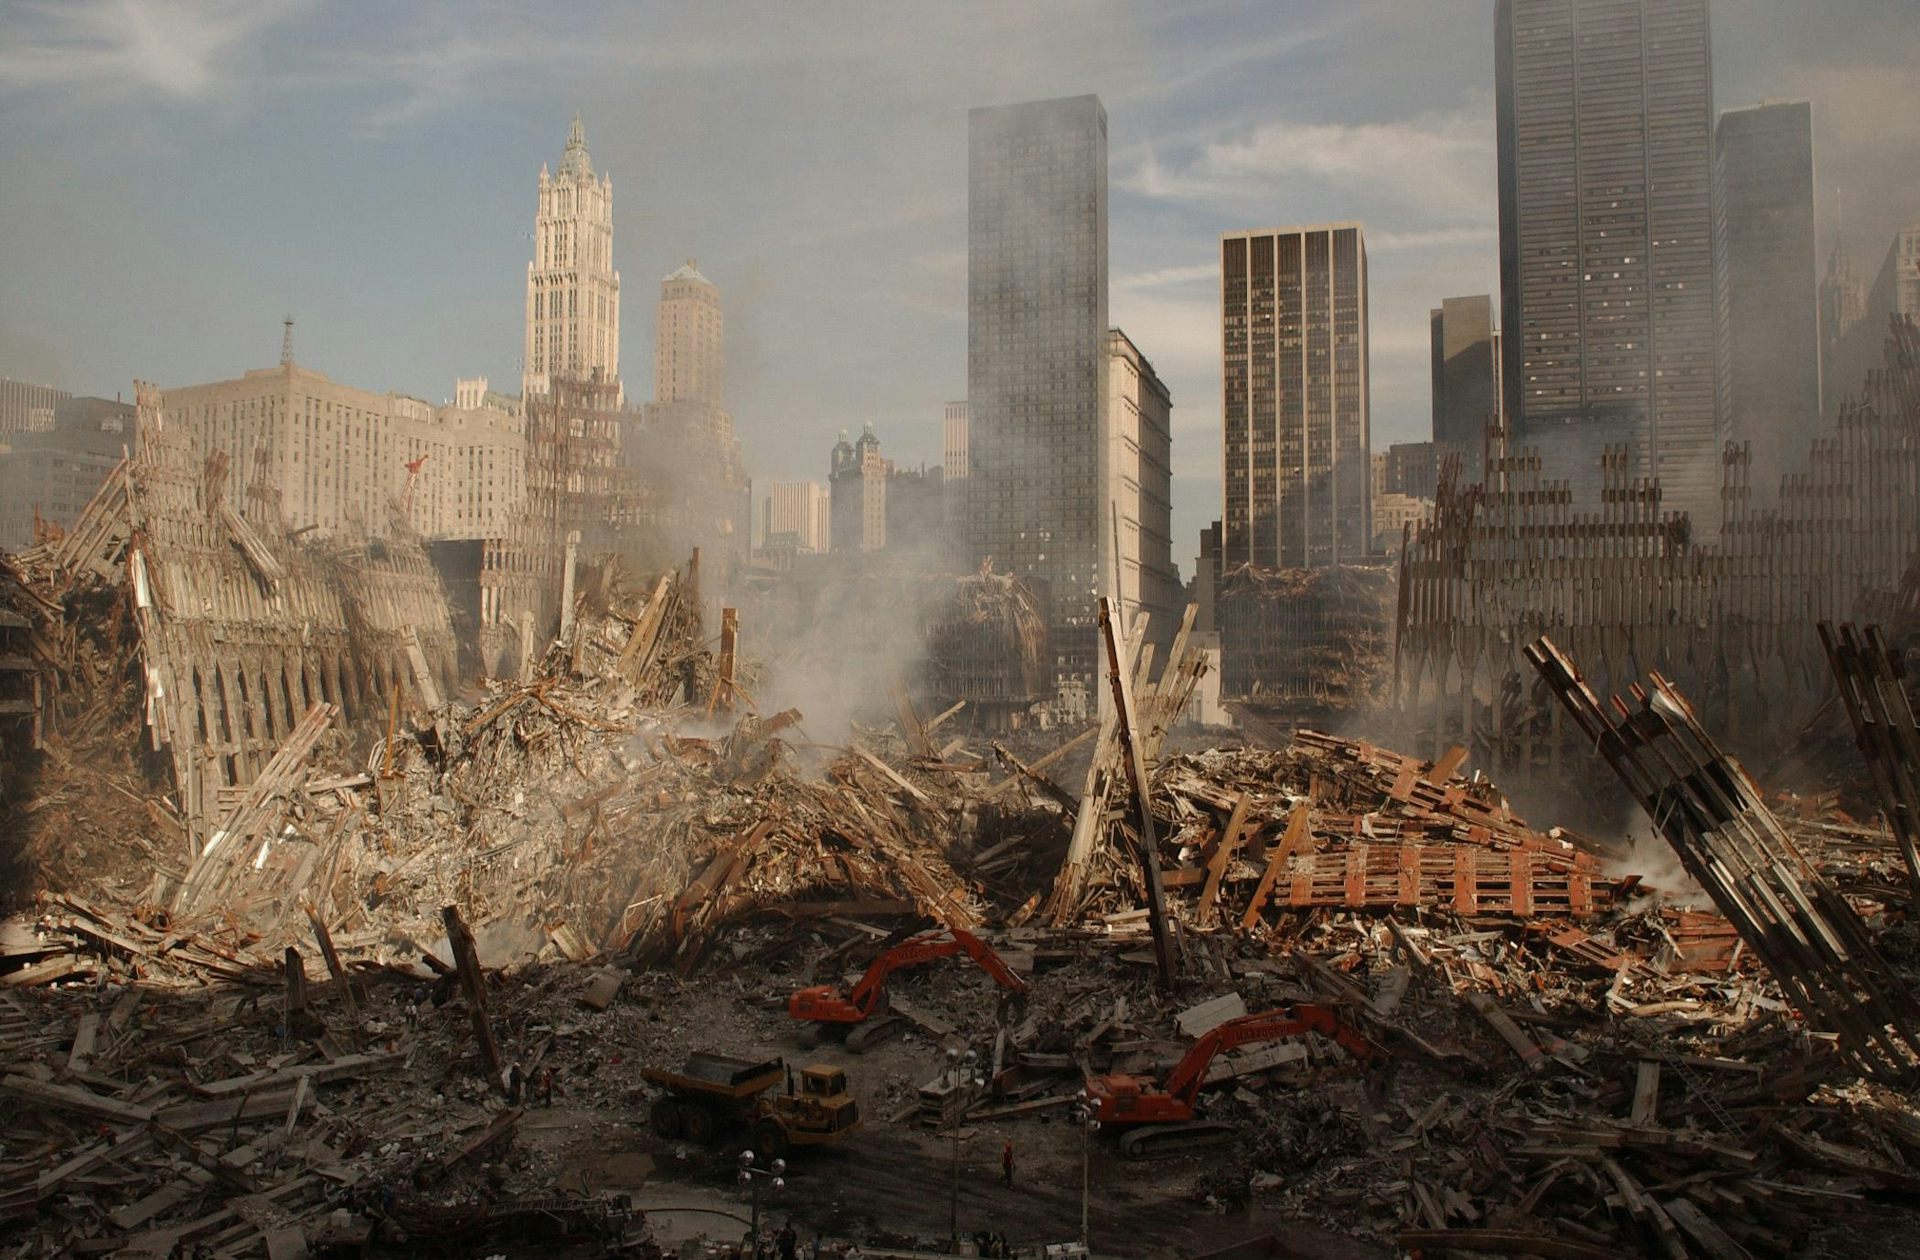  panoramabillede af jorden nul, stedet for Verdenshandelscentret, dagen efter 9/11.